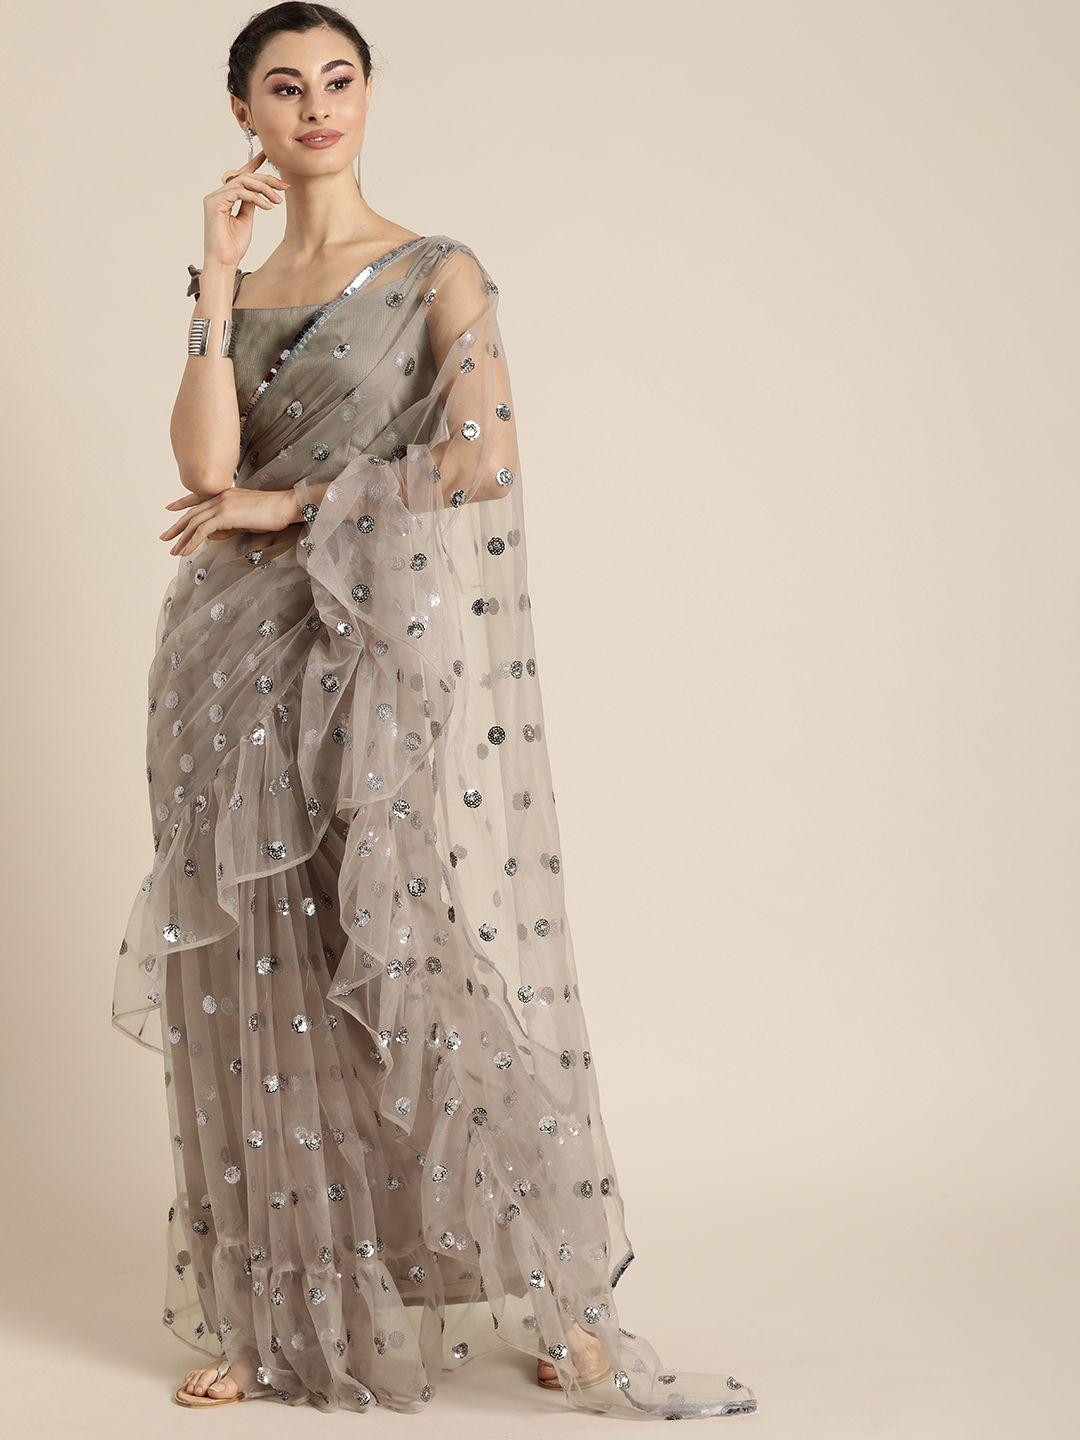 inddus grey embellished net ruffle saree